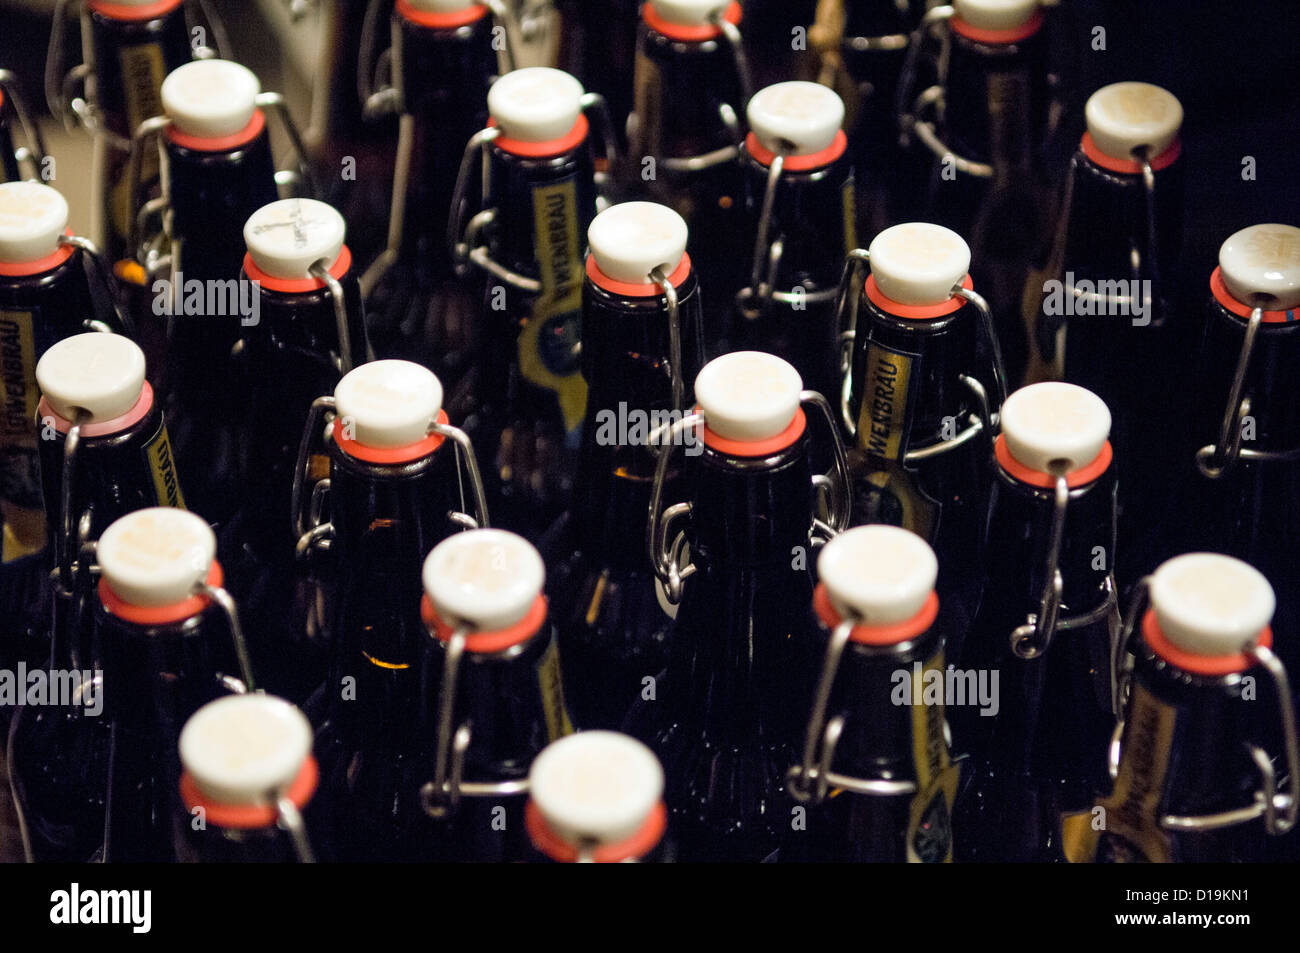 Löwenbräu Beer Bottles Stock Photo